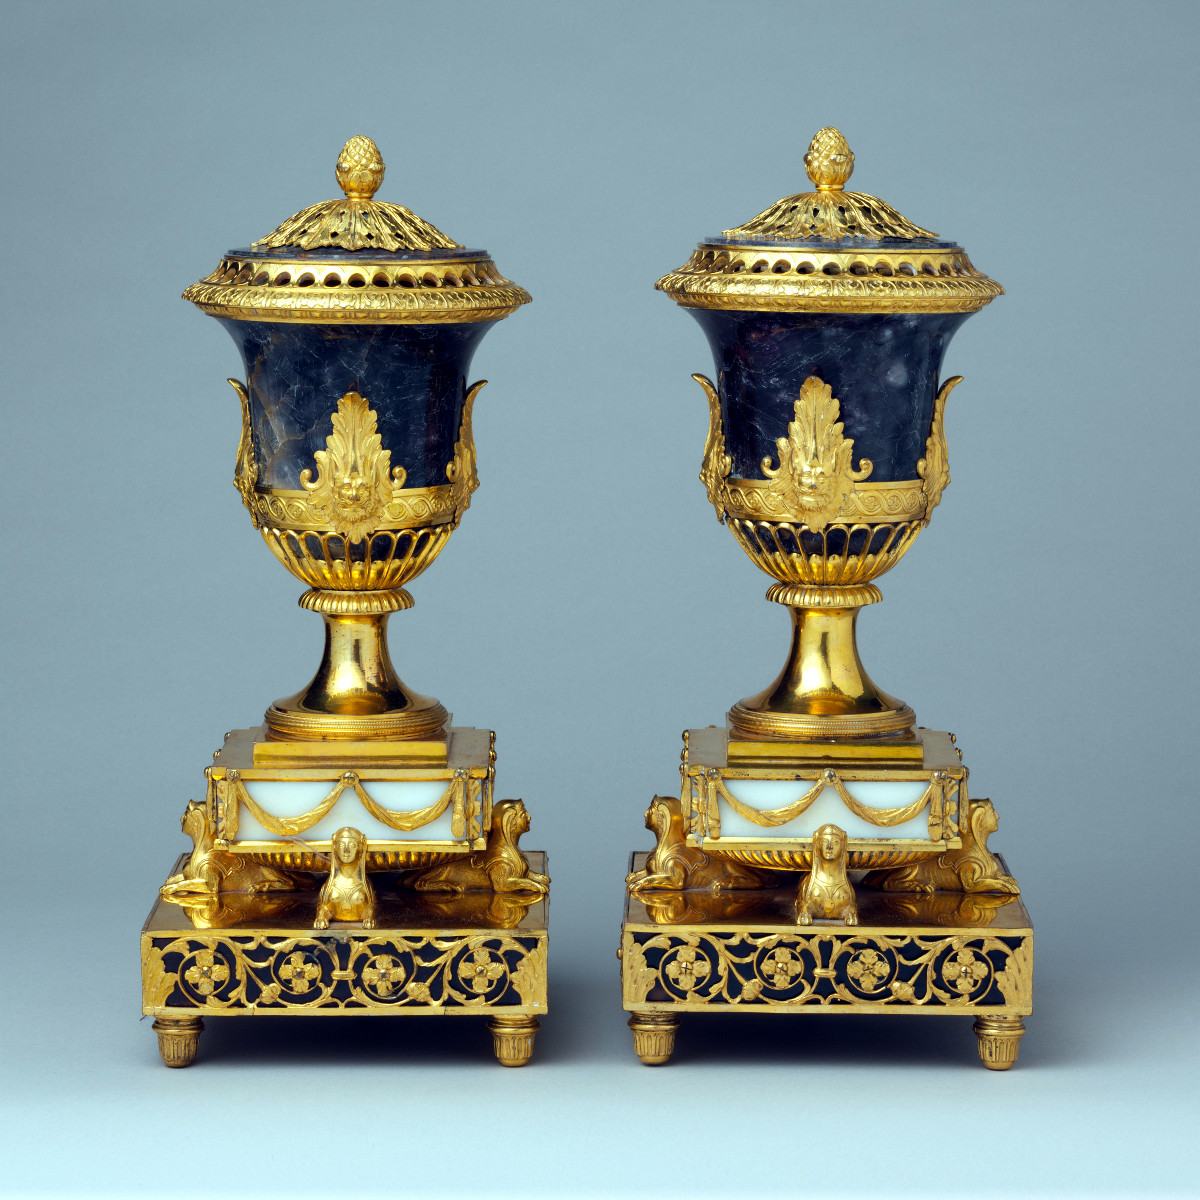 1770. Pair of perfume burners. Matthew Boulton. Credit metmuseum.org